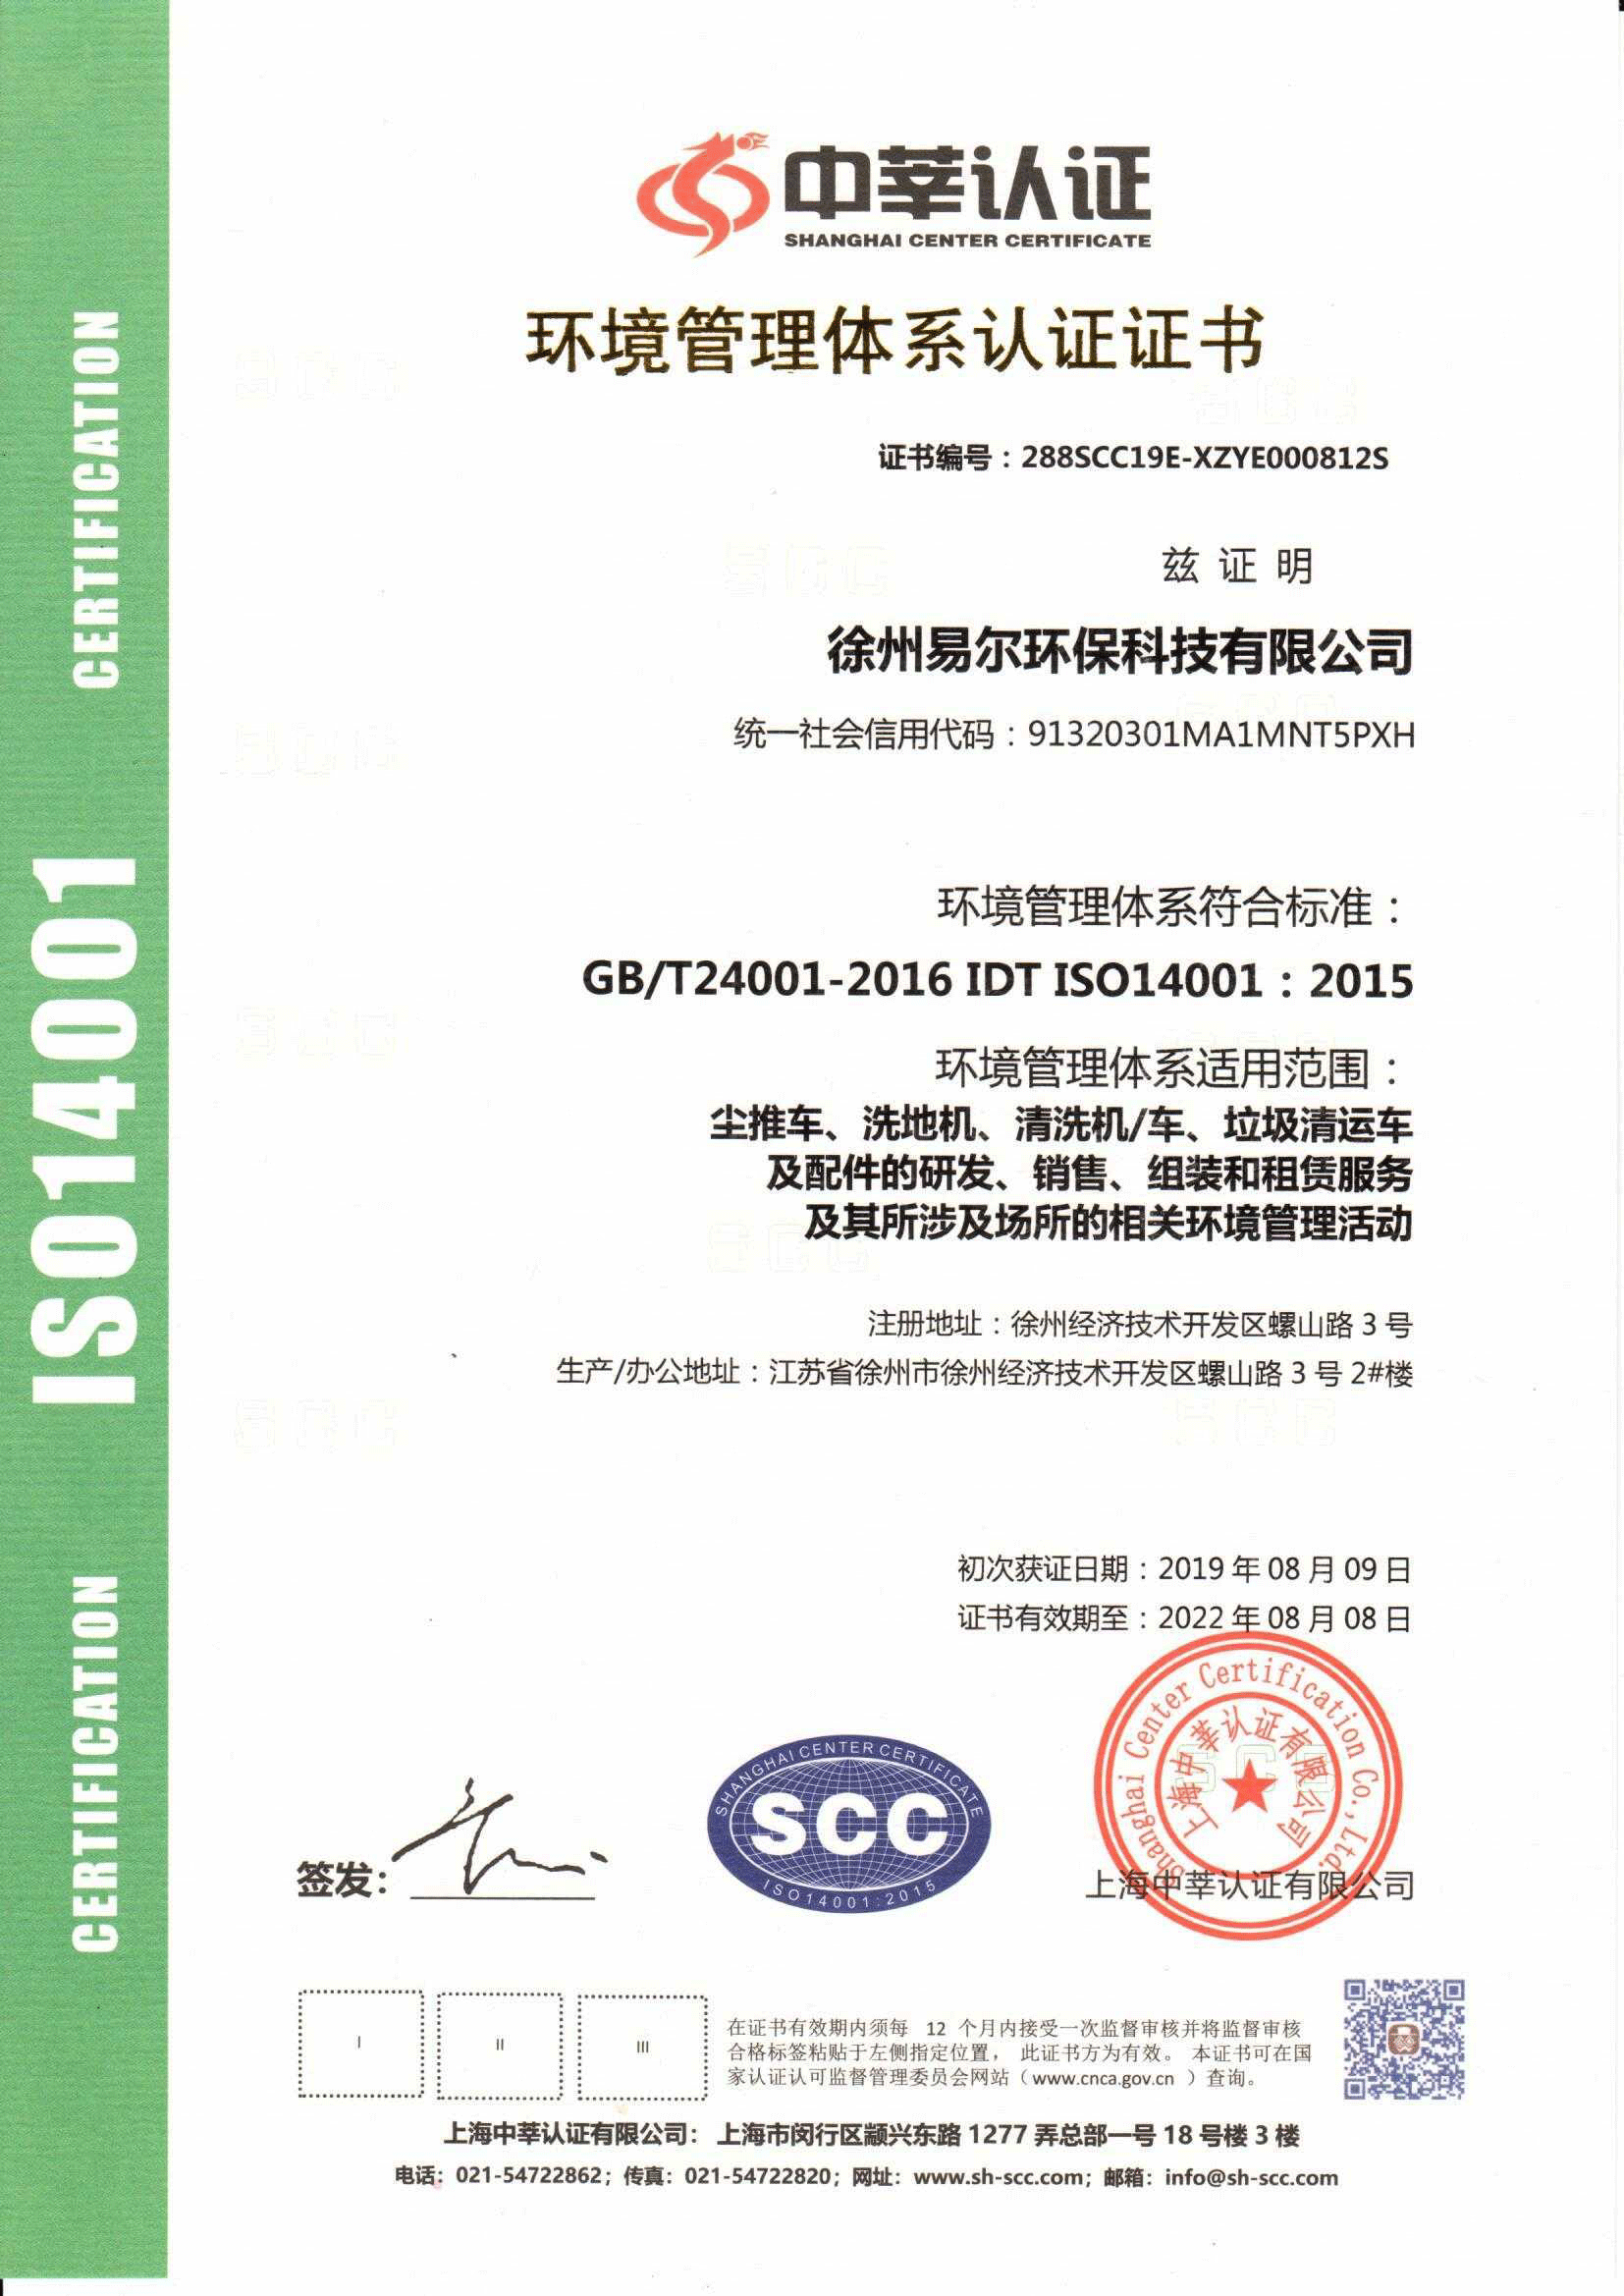 环境管理体系认证证书-1.png